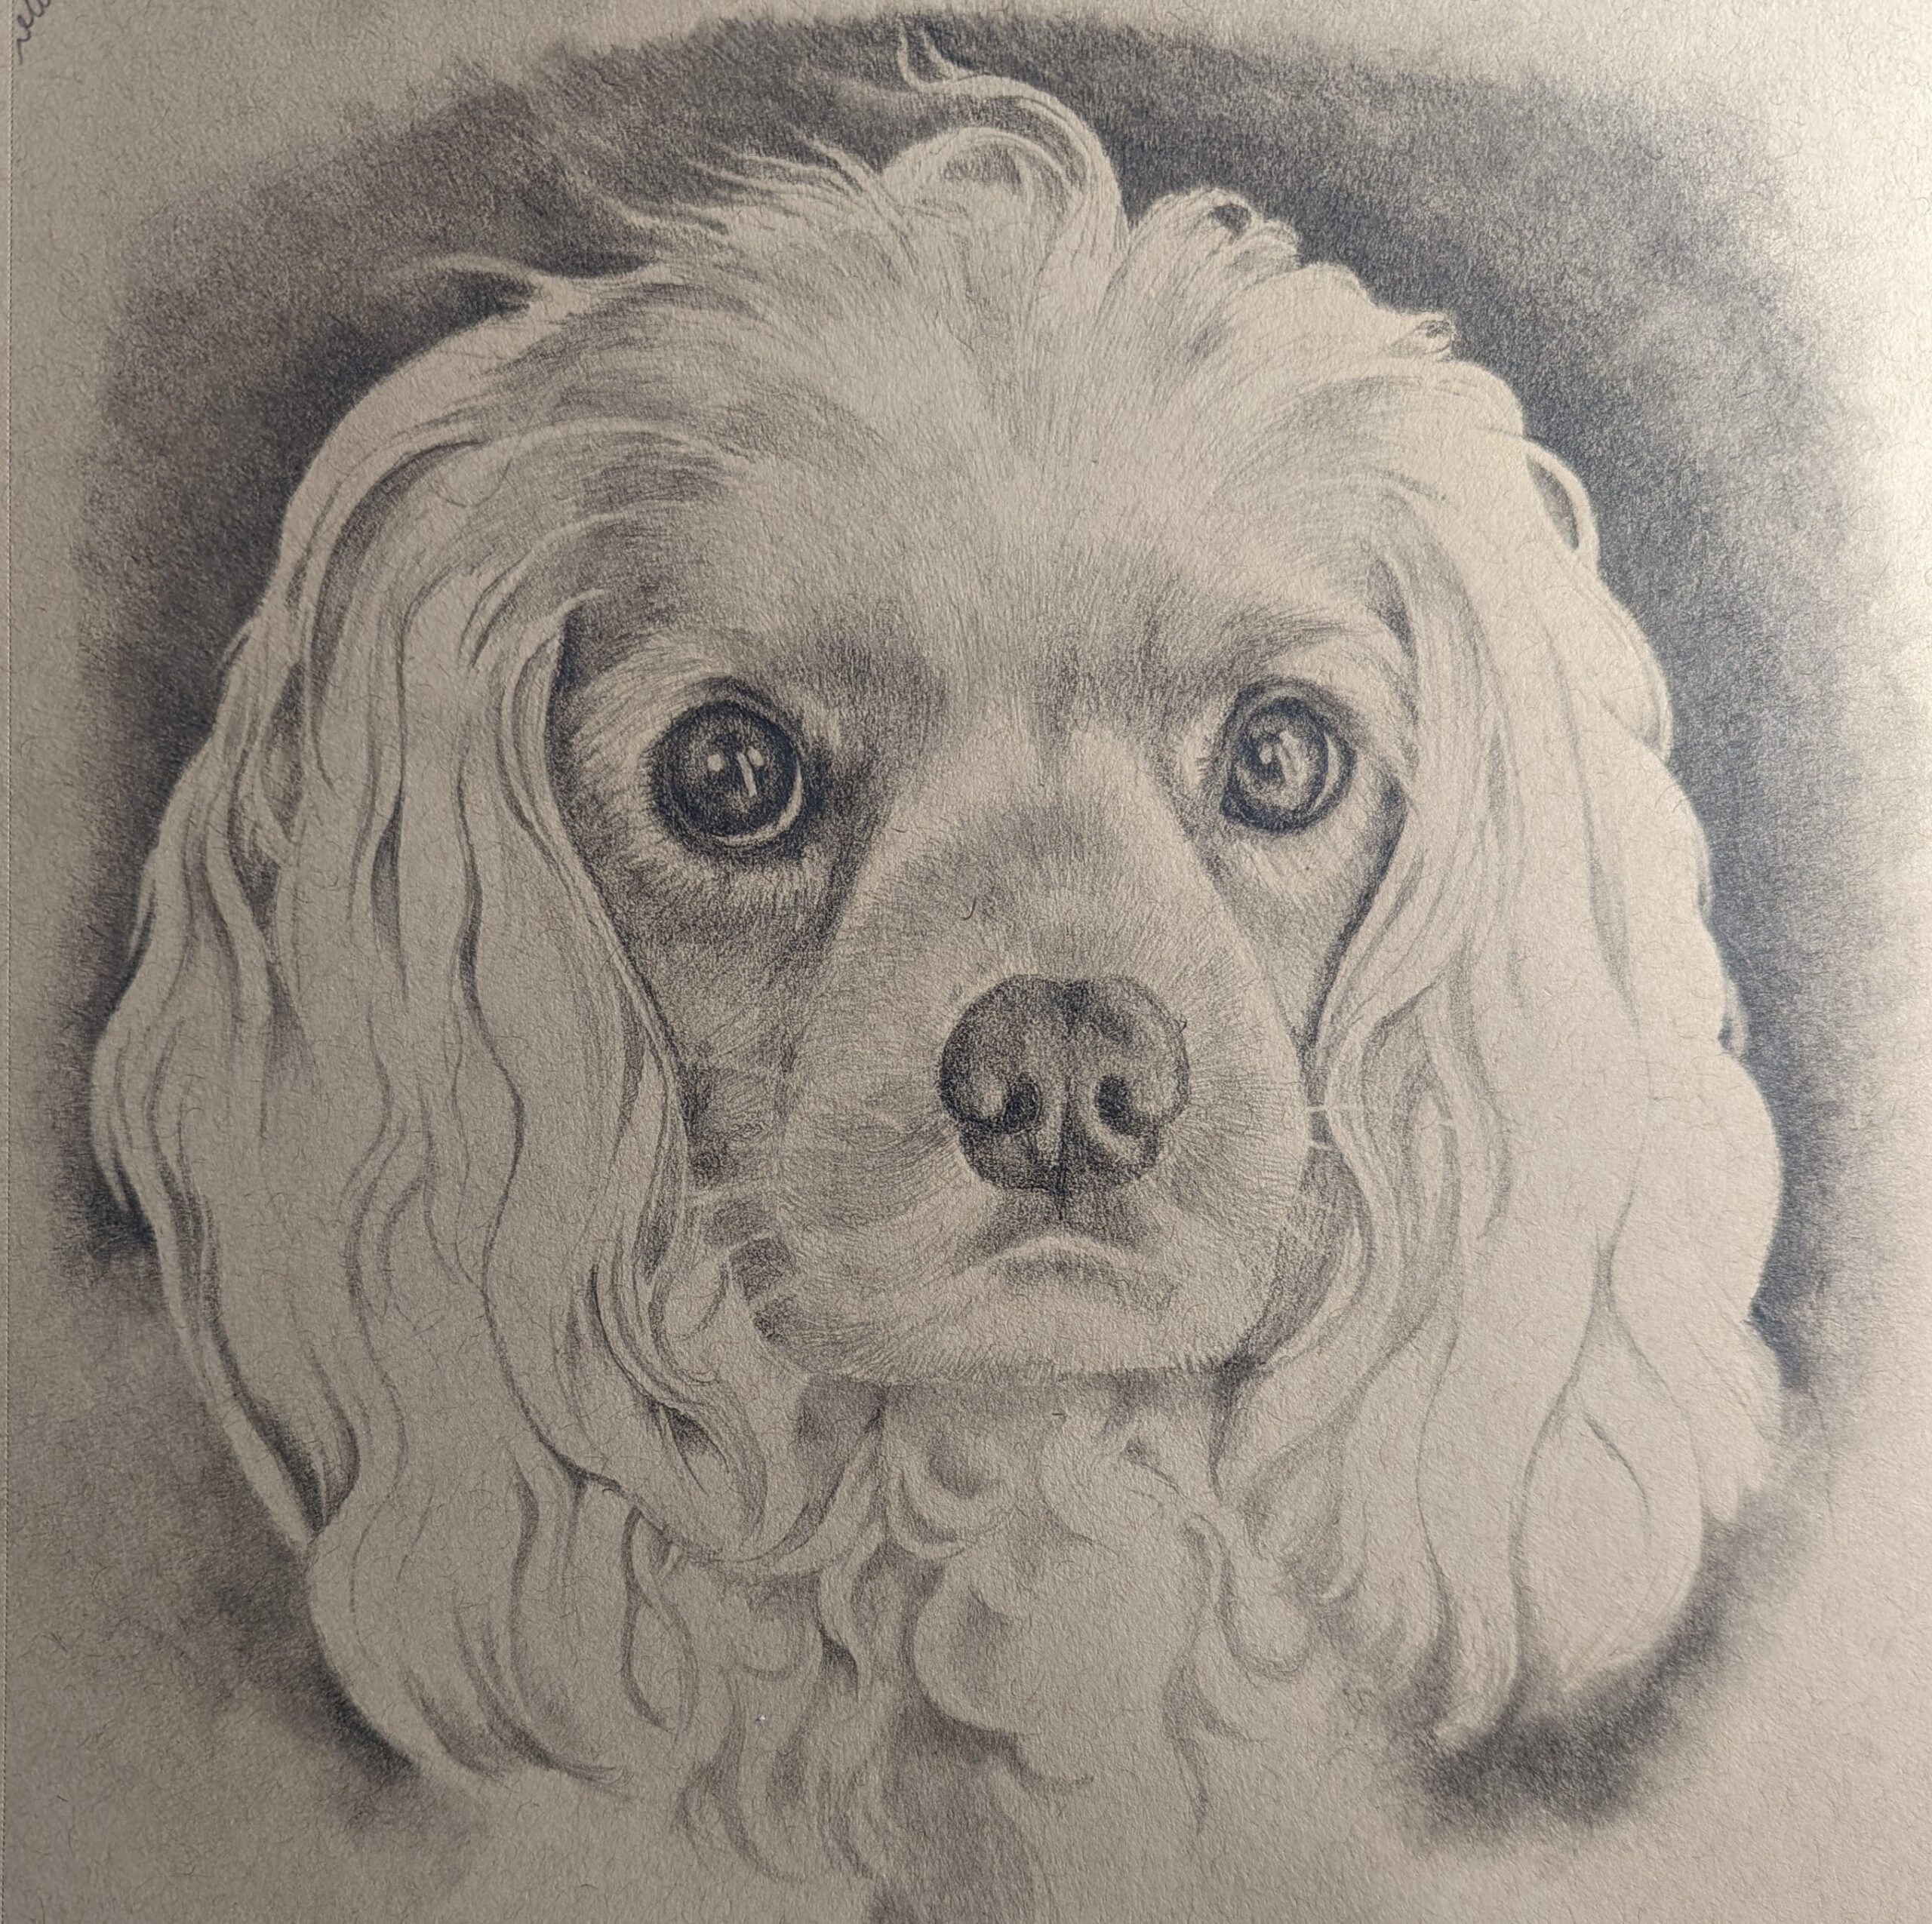 Jamie portrait of a dog